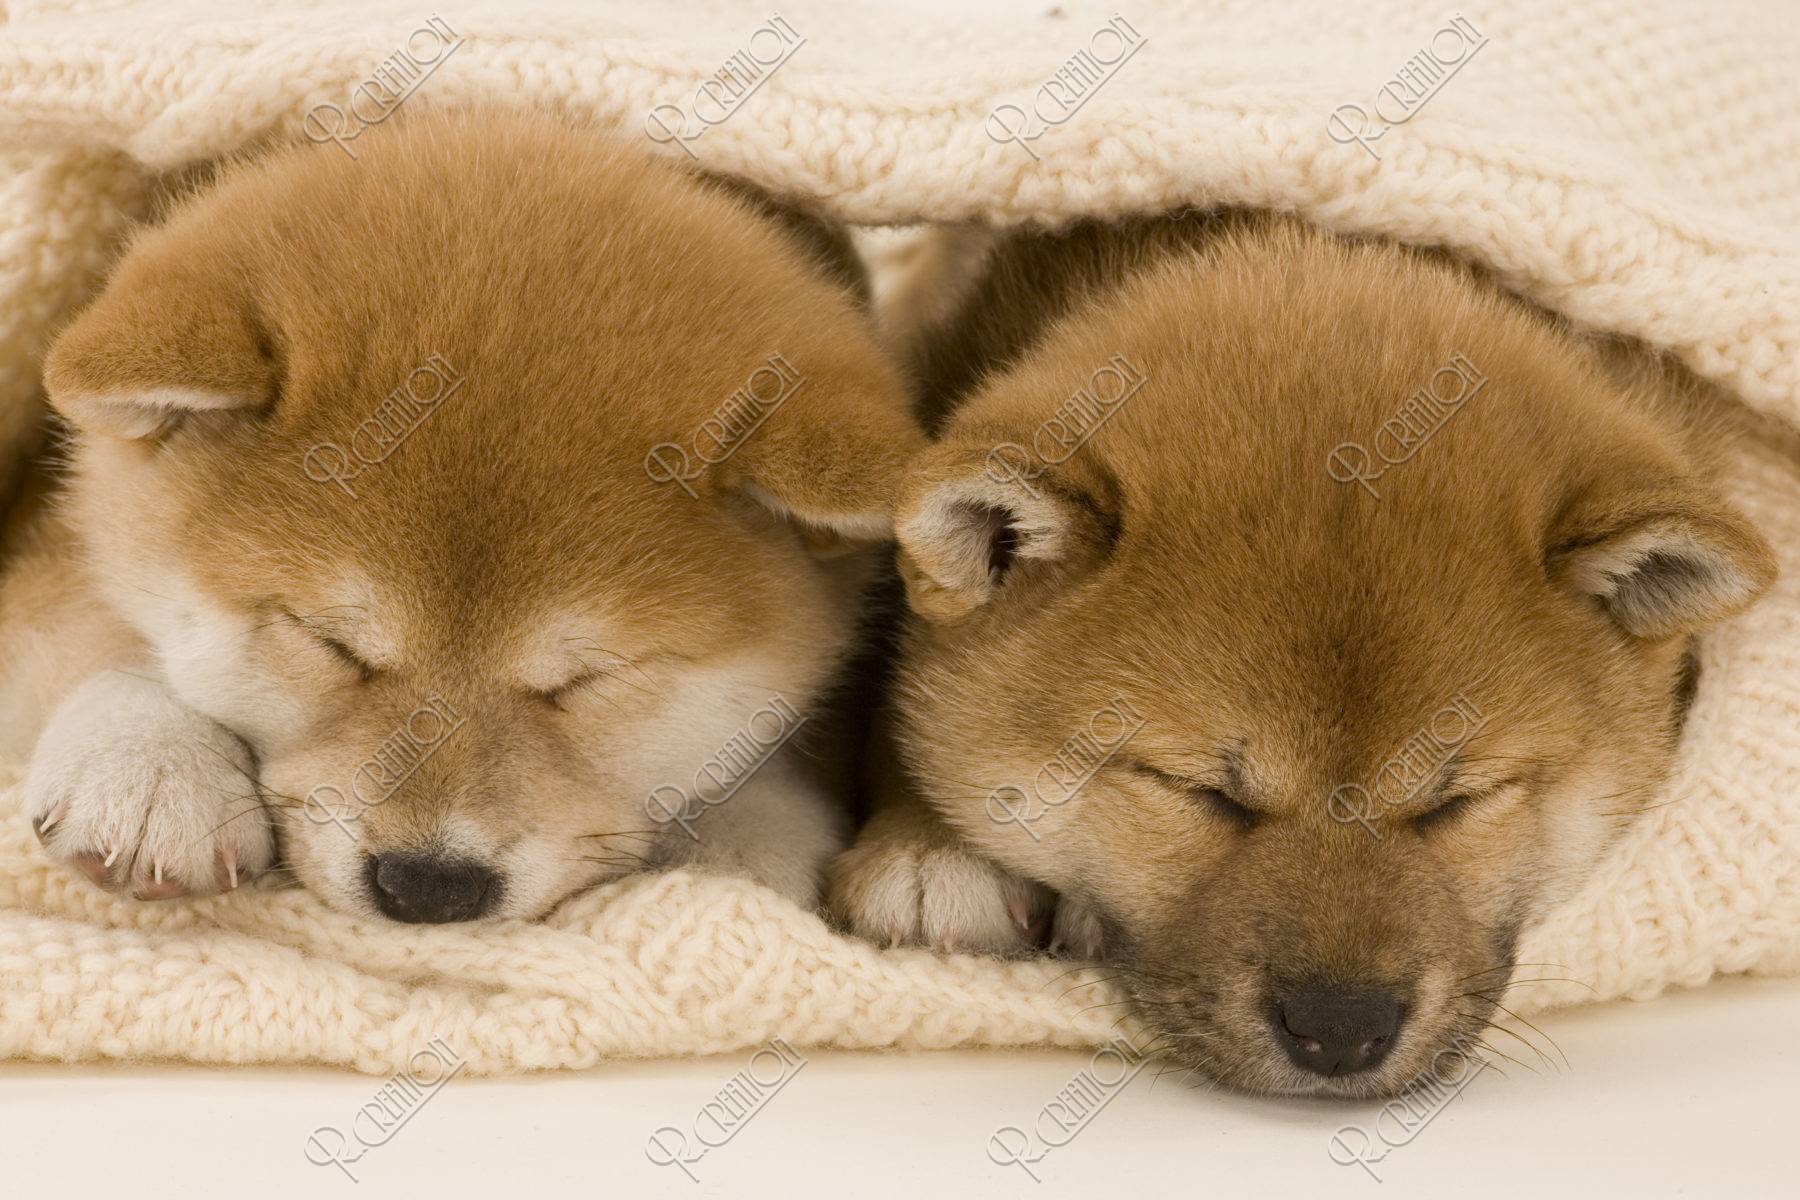 柴犬 イヌ 子犬 眠る くるまる 2匹 並ぶ ストックフォト アールクリエーション